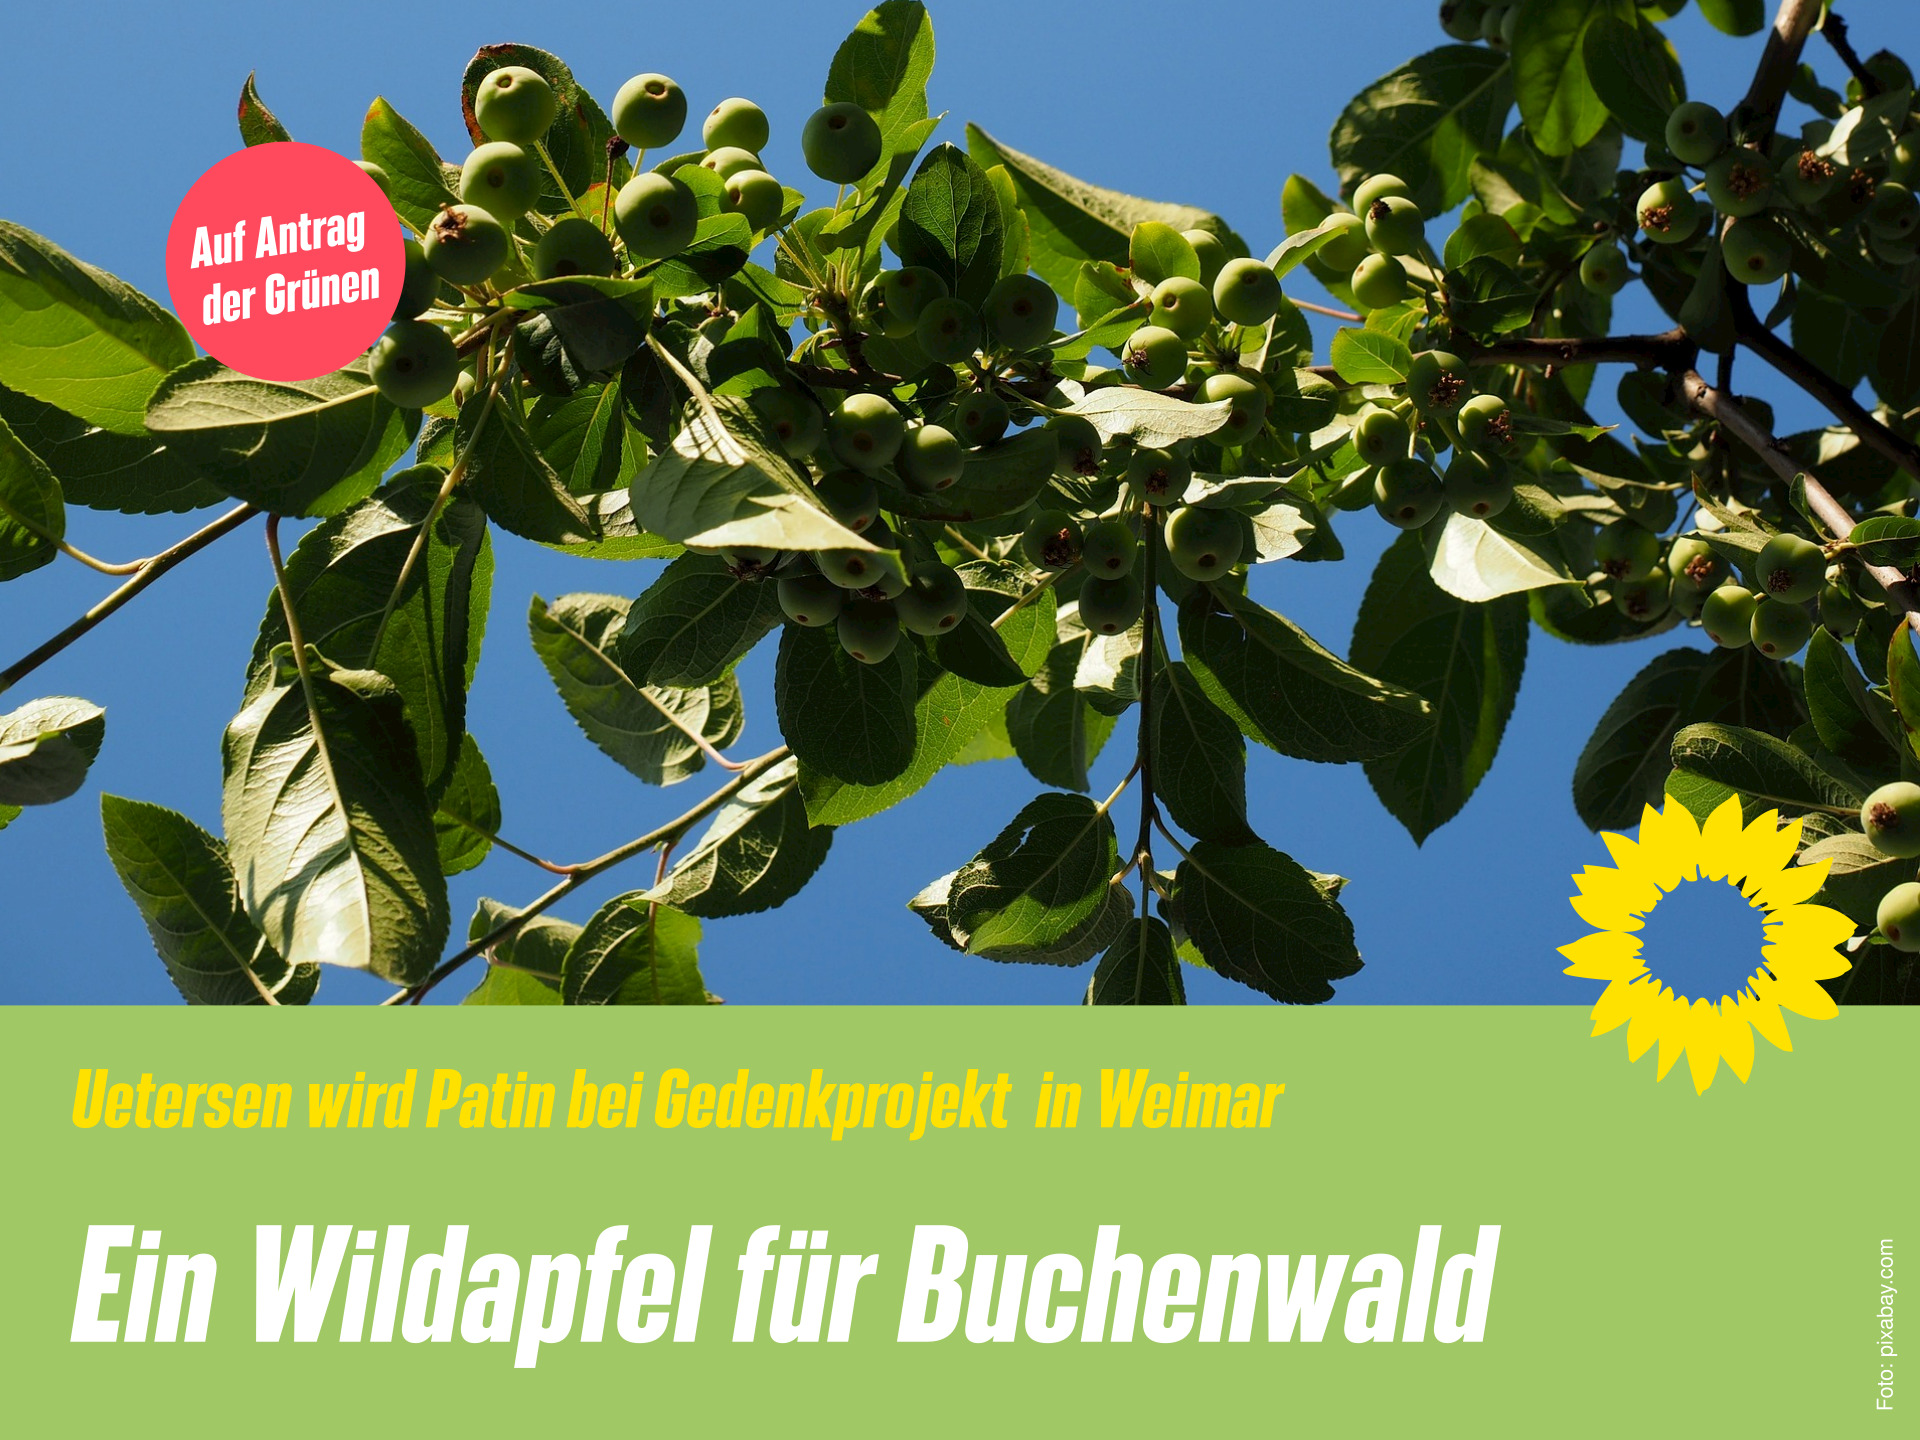 Der Ast eines Wildapfelbaums, aus der Froschperspektive fotografiert, mit vielen grünen Blättern und kleinen grünen Äpfeln ragt in den sonnige, blauen Himmel